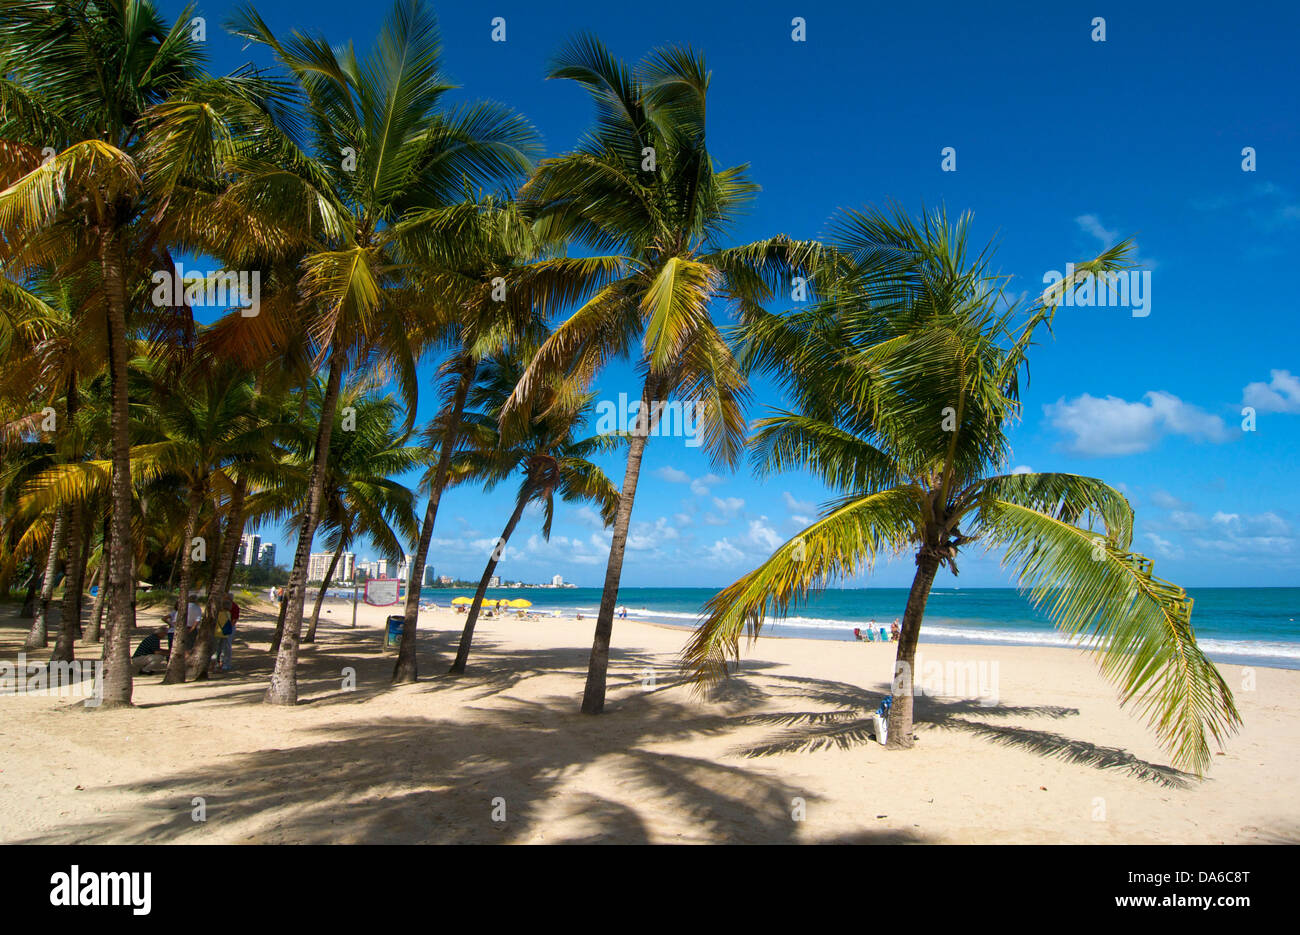 Puerto Rico, Caribbean, Greater Antilles, Antilles, San Juan, Isla Verde Beach, palm beach, palm beaches, sand beach, sand beach Stock Photo